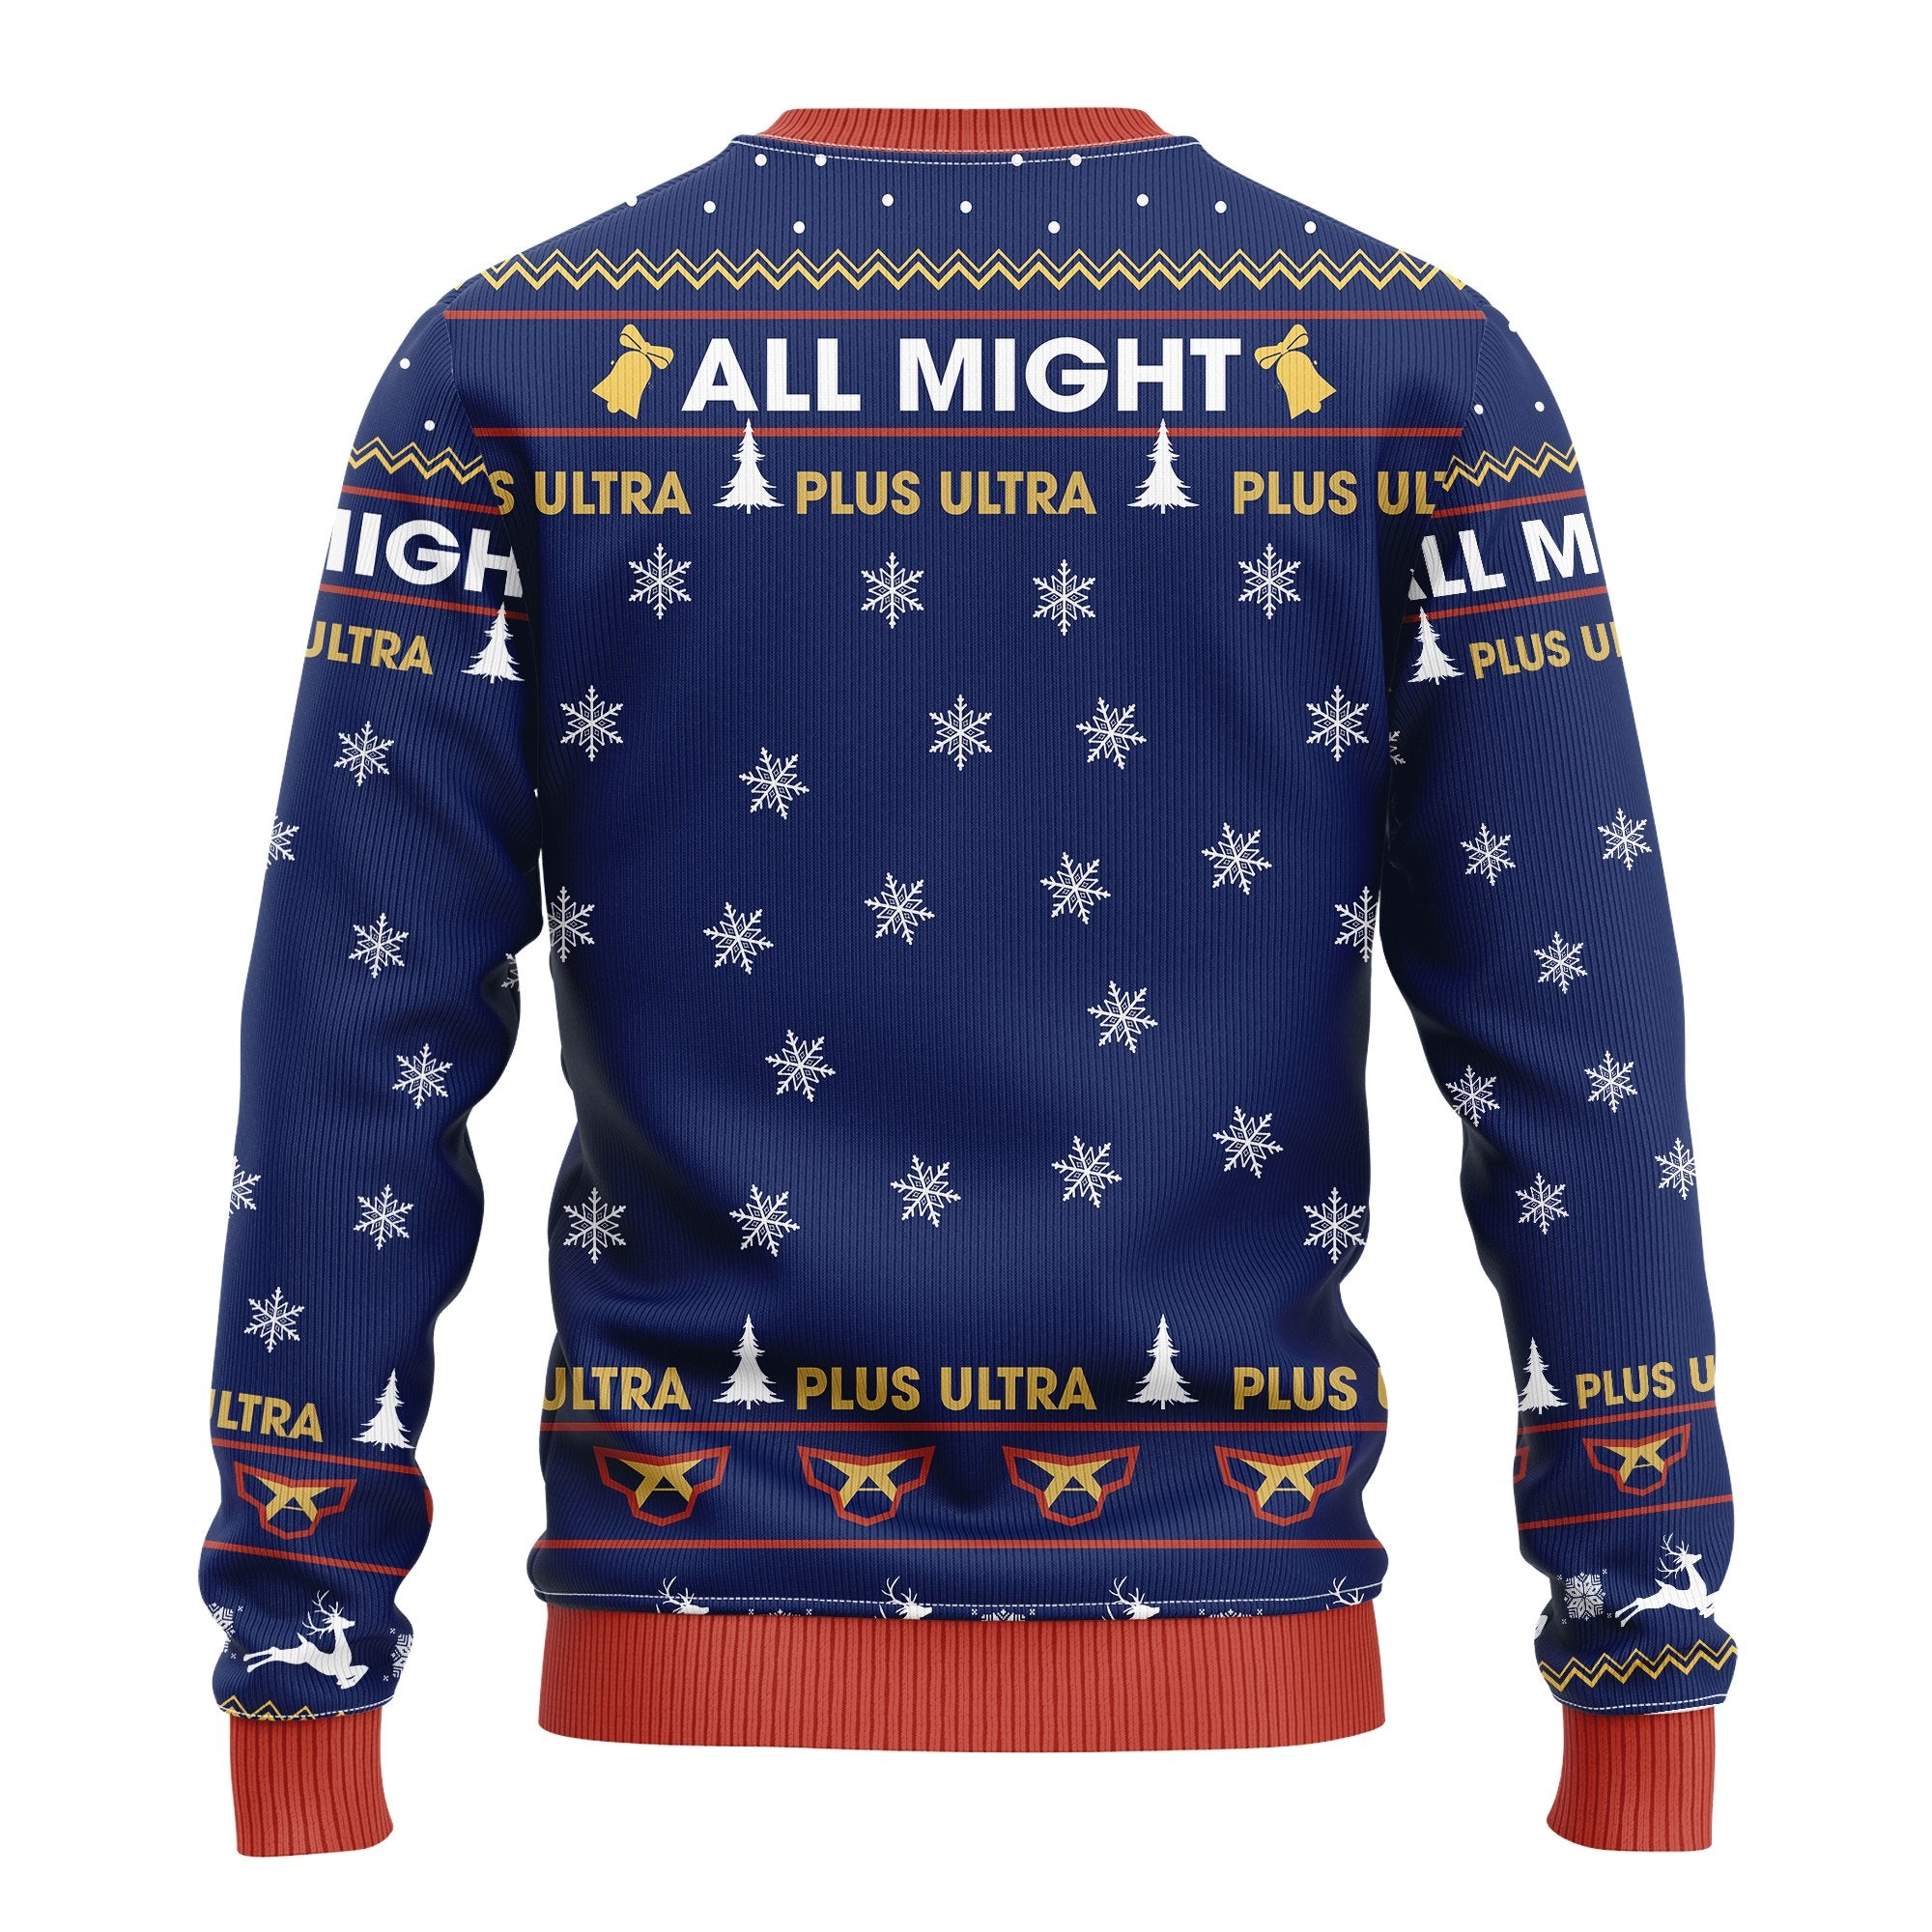 My Hero Academia Ugly Christmas Sweater Amazing Gift Idea Thanksgiving Gift